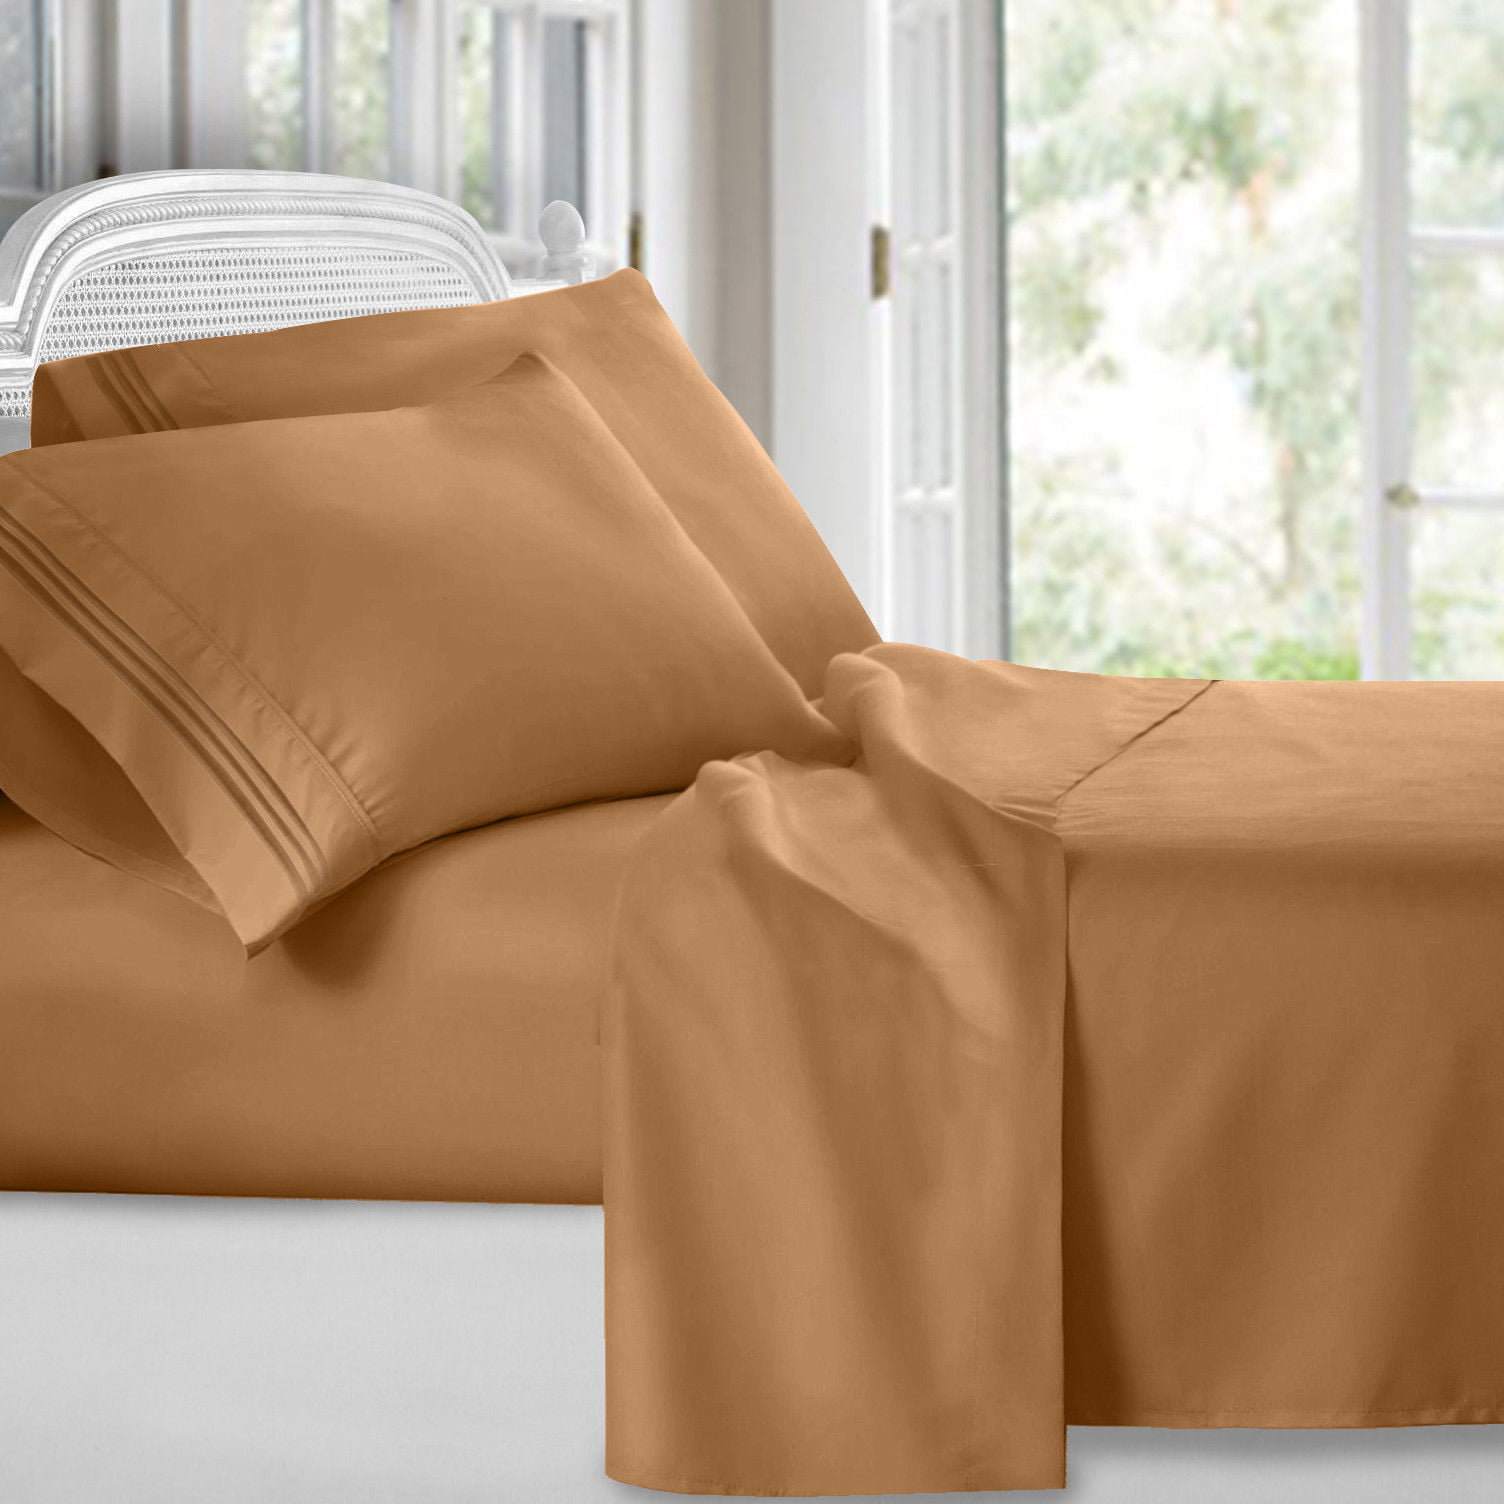 Egyptian Comfort Ultra Soft 4 Piece Bed Sheet Set 